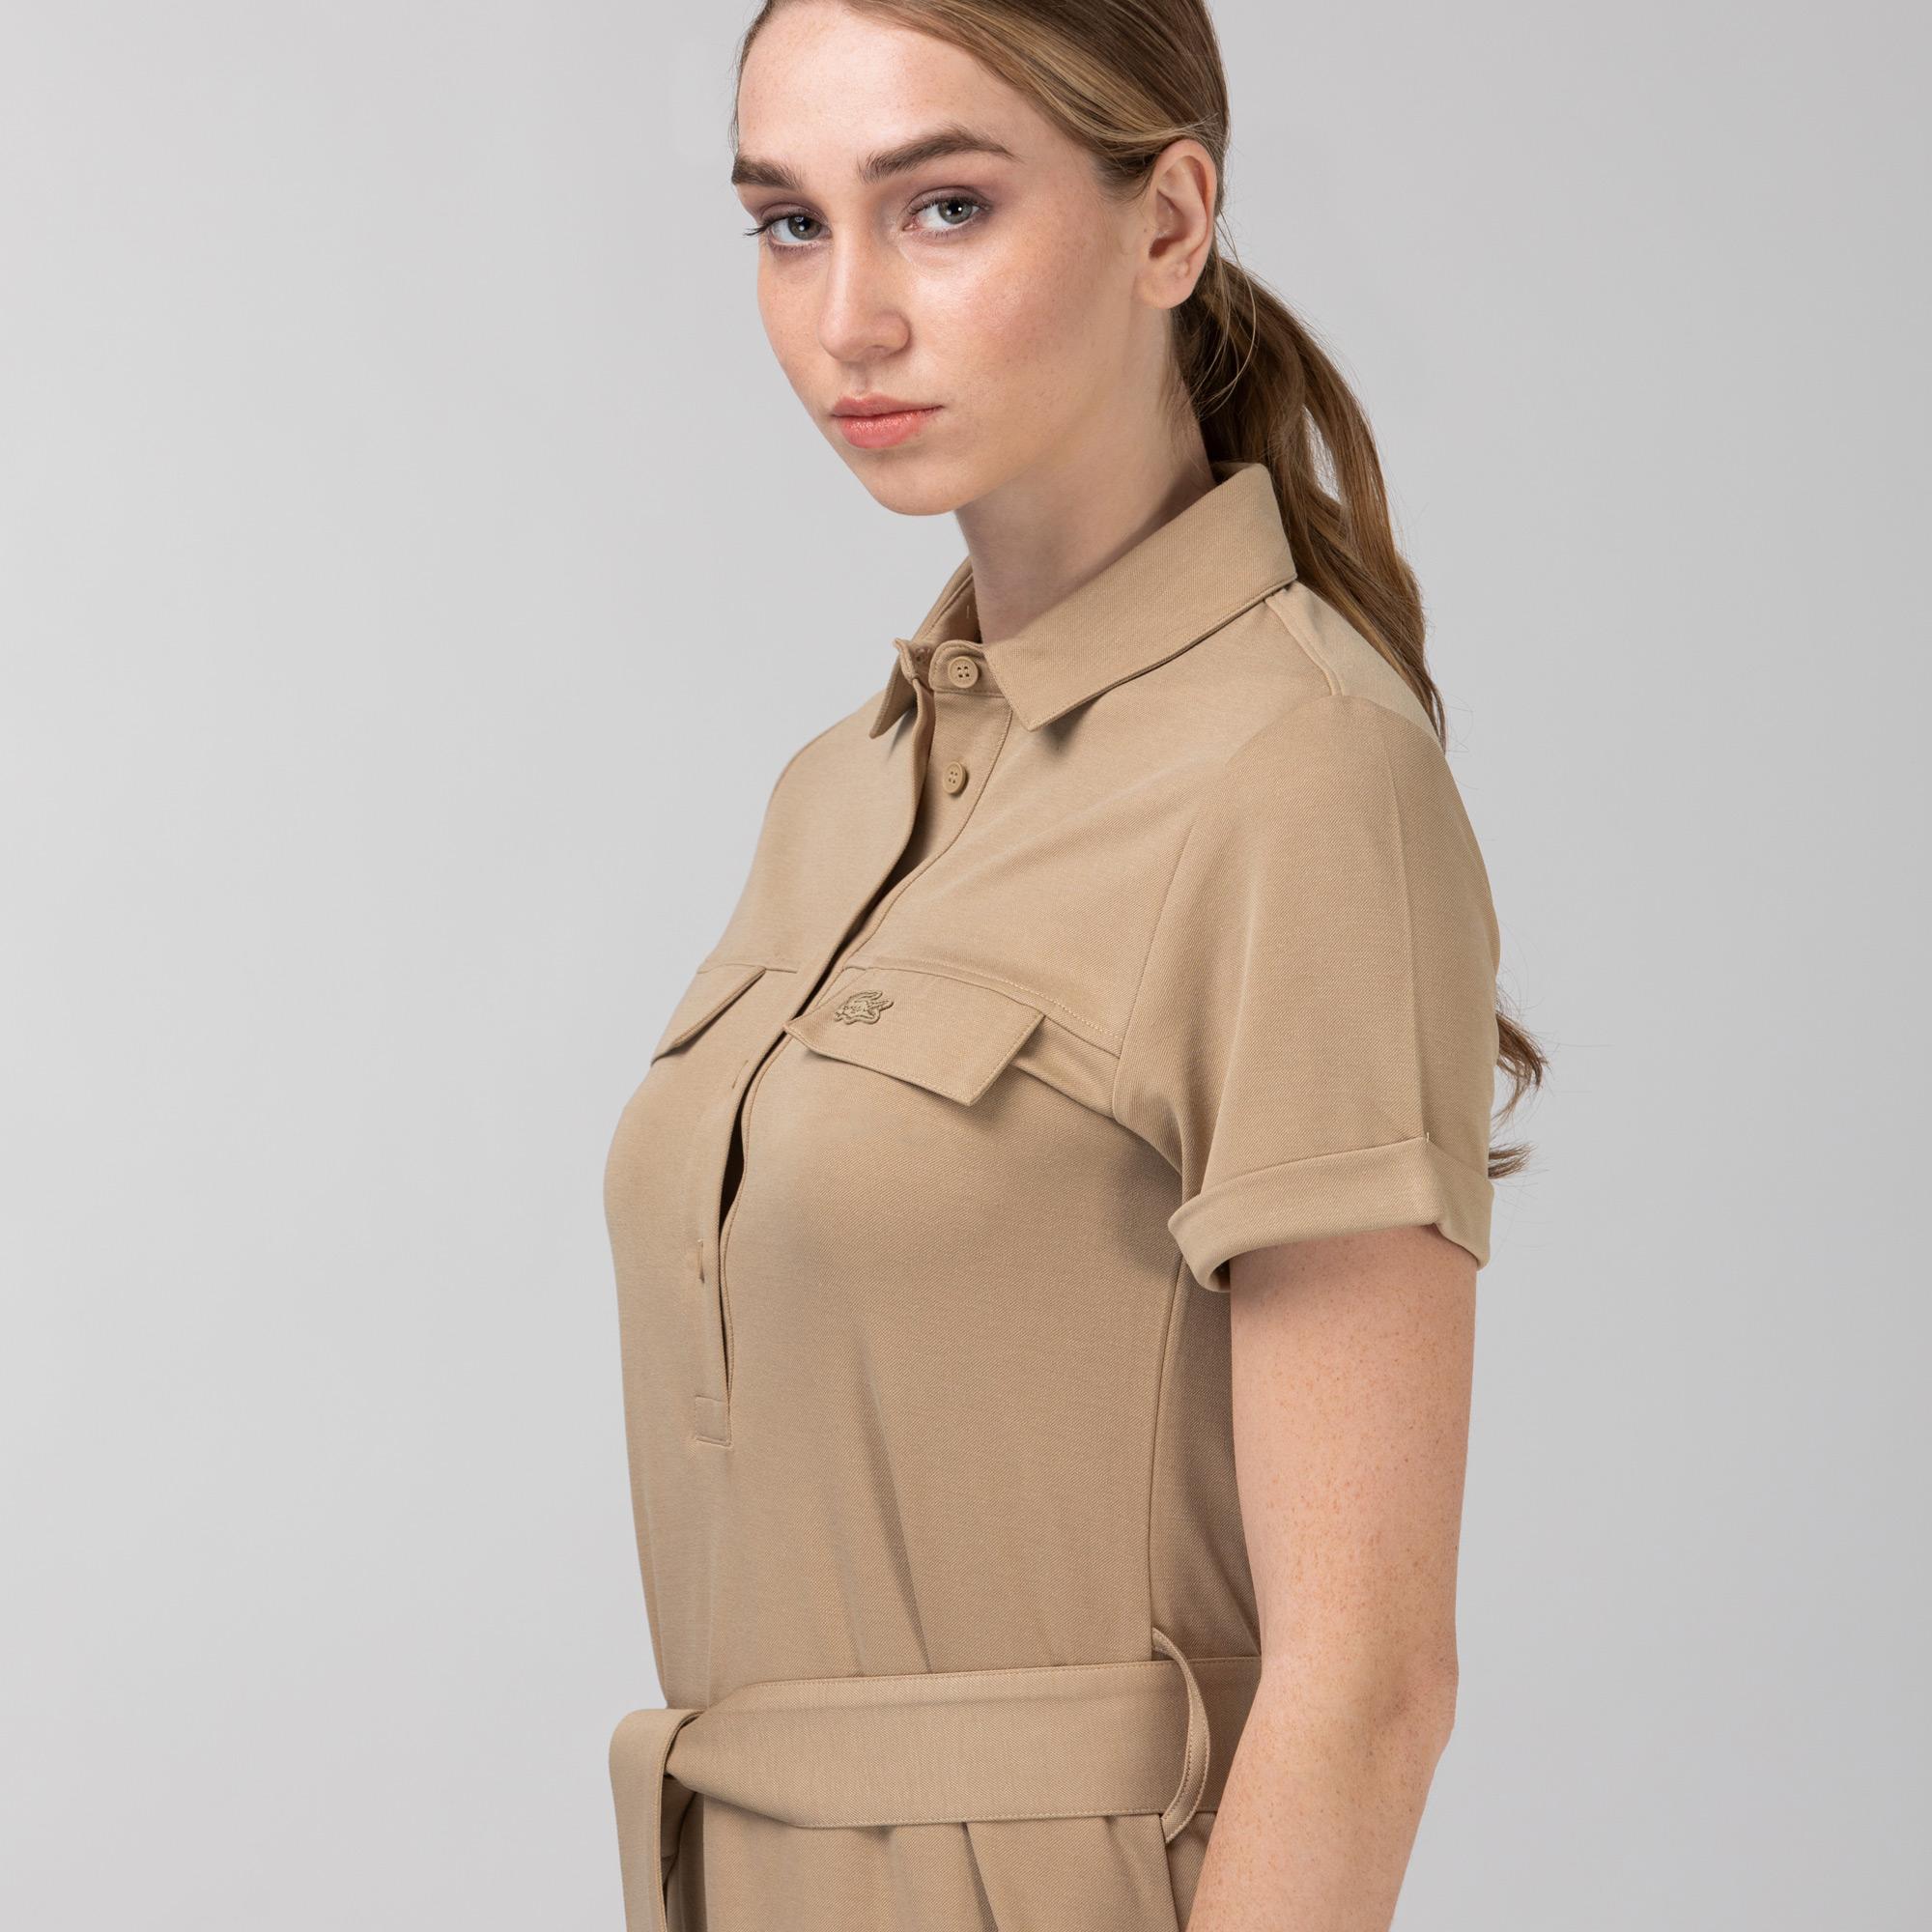 Lacoste Kadın Kısa Kollu Gömlek Yaka Açık Kahverengi Elbise. 1